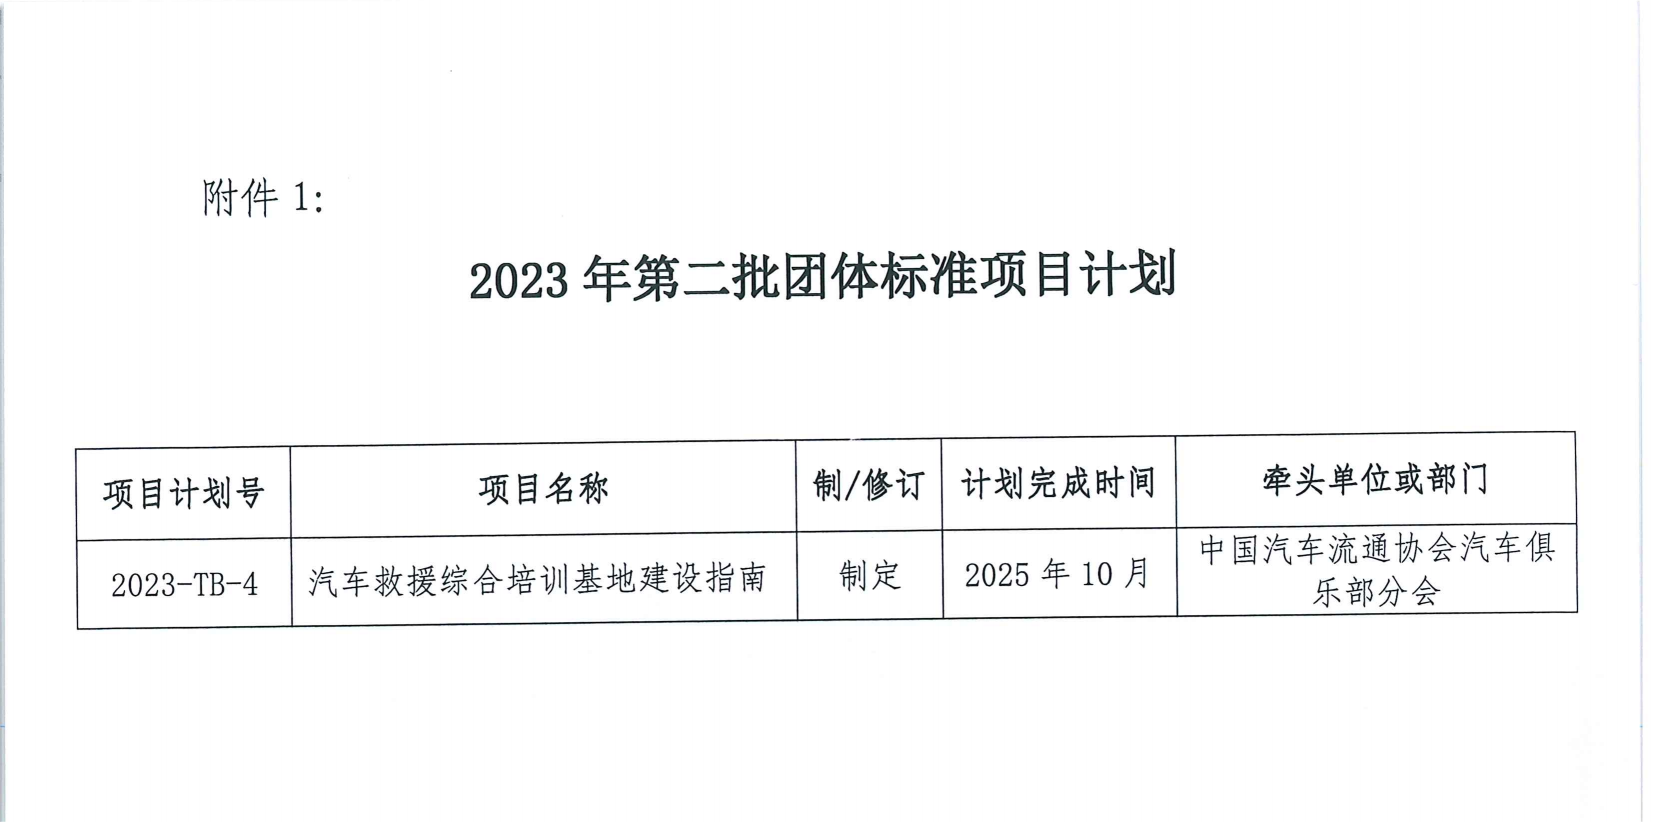 关于印发中国汽车流通协会 2023 年第三批团体标准项目计划的通知_02.png